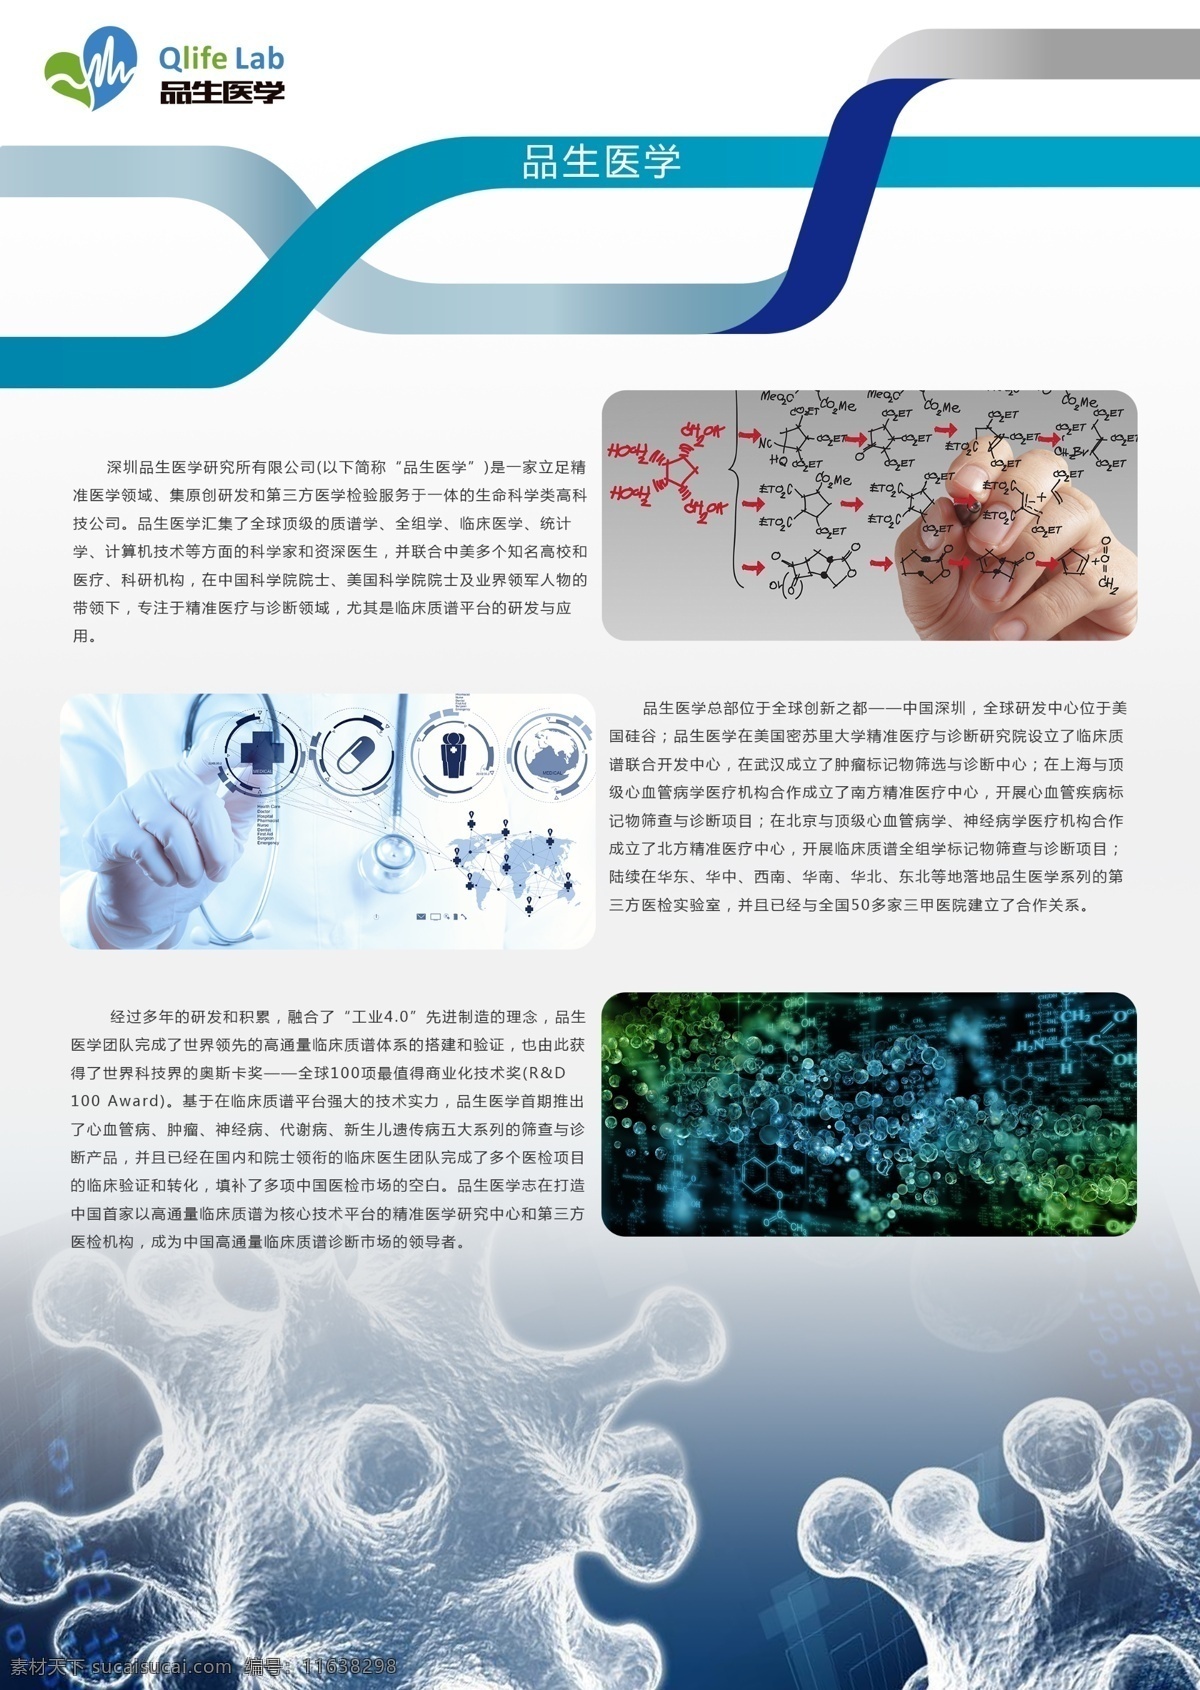 公司 介绍 宣传页 生物科技 精准医疗 生命 科学 医学